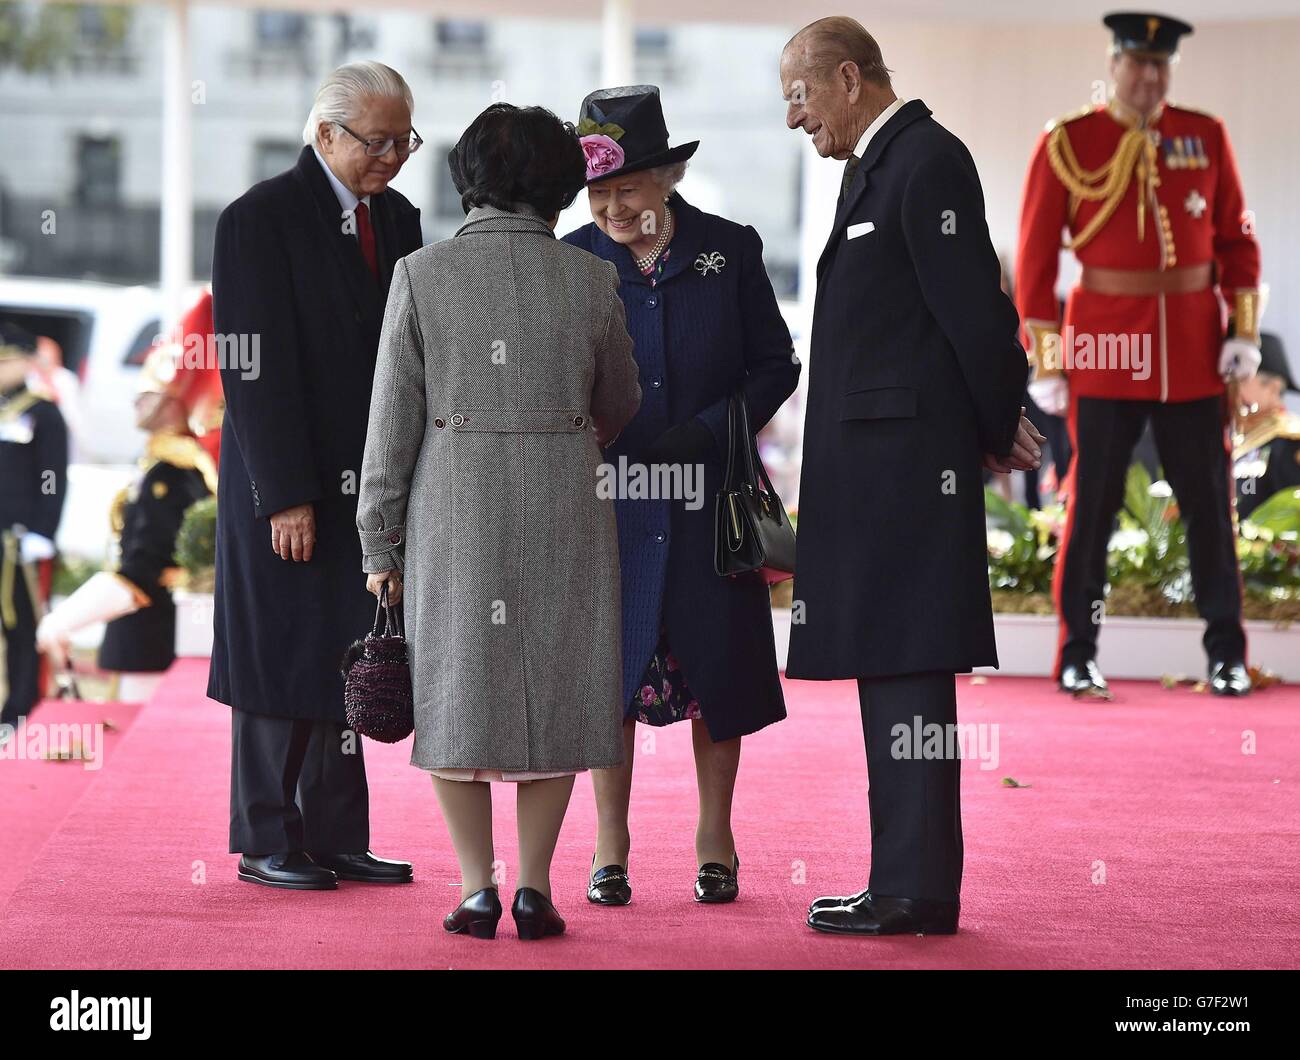 La Reina Isabel II y el Duque de Edimburgo (derecha) saludan al Presidente de Singapur Tony tan Keng Yam (izquierda) y a su esposa Mary Chee (izquierda) durante una ceremonia de bienvenida en el Horse Guards Parade de Londres en la primera de una visita estatal de cuatro días a Gran Bretaña. Foto de stock